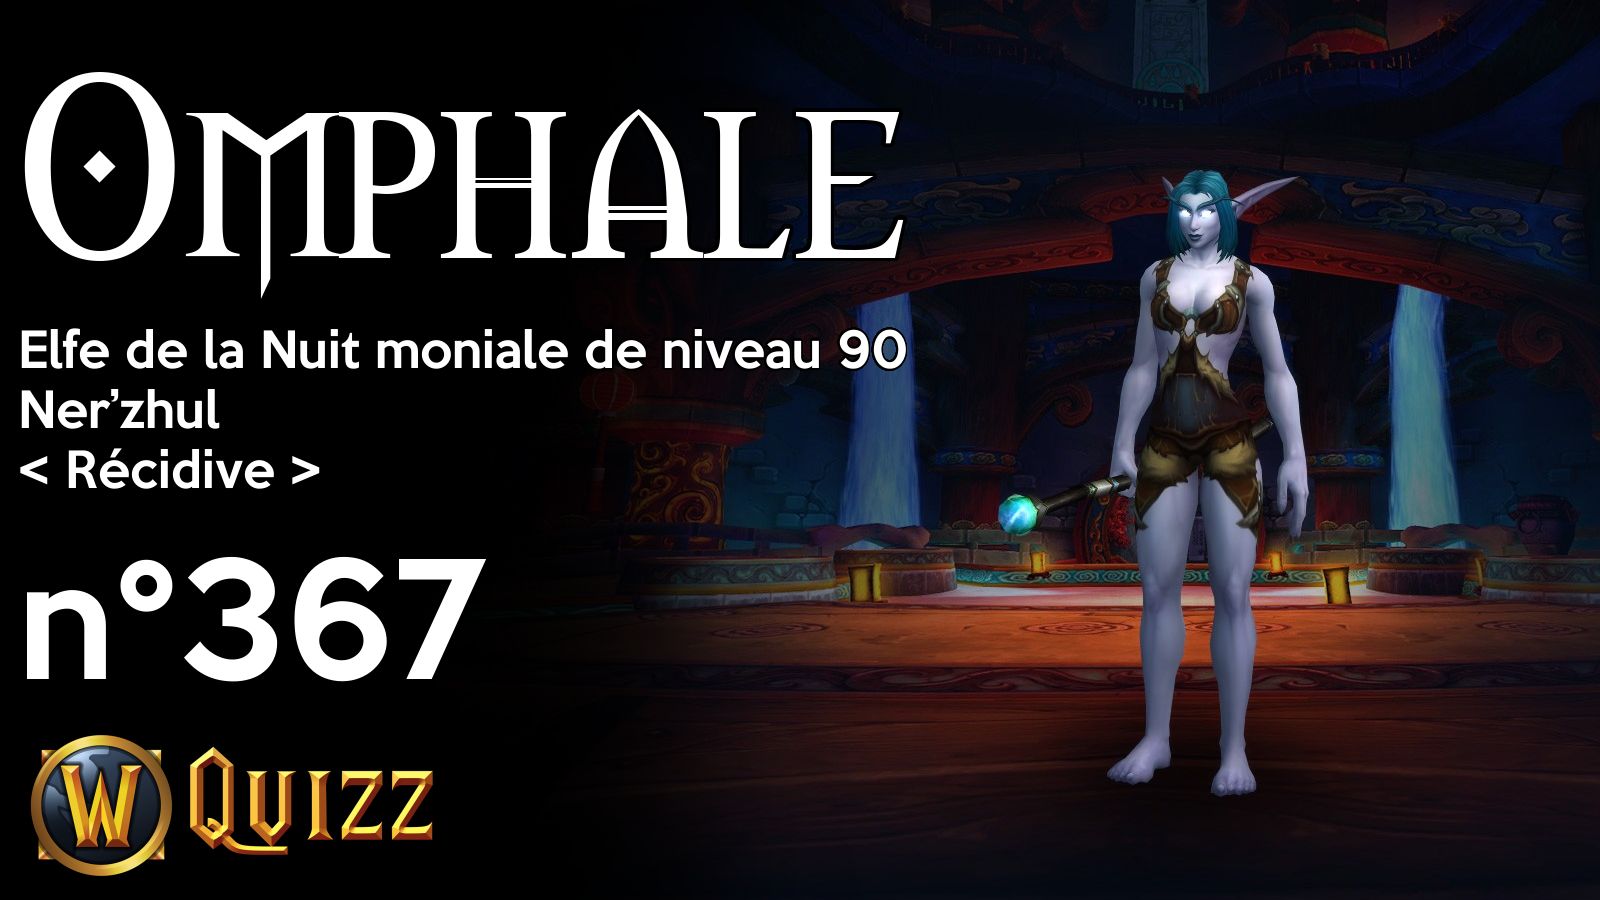 Omphale, Elfe de la Nuit moniale de niveau 90, Ner’zhul